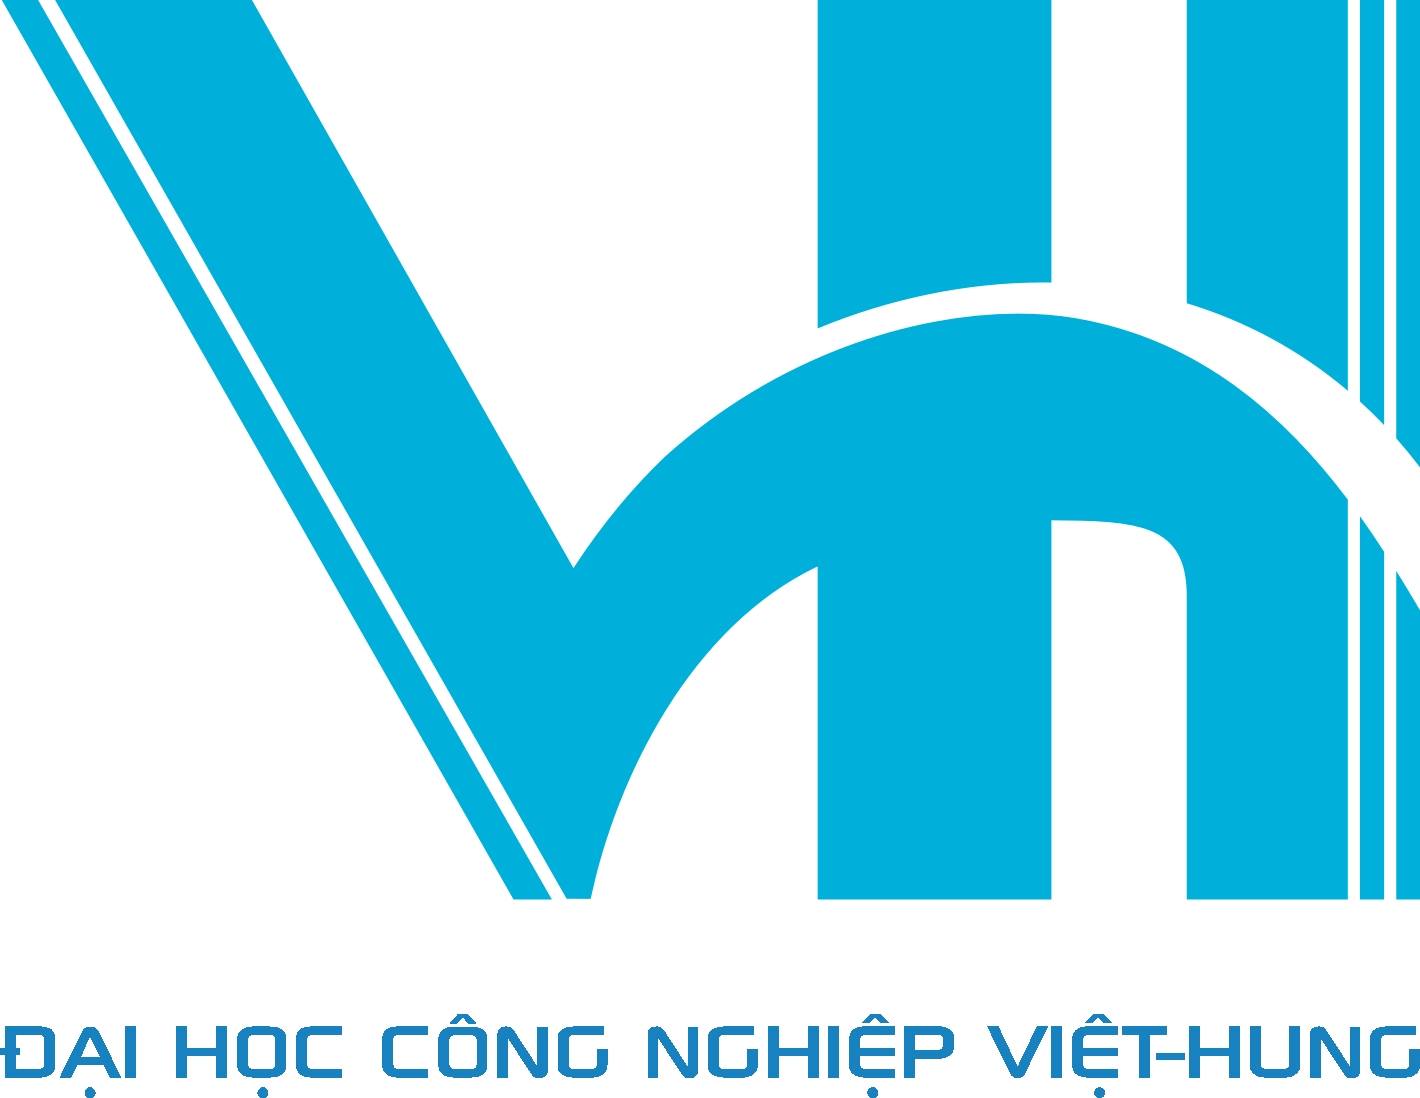 Trường Đại học Công nghiệp Việt - Hung (VIU)